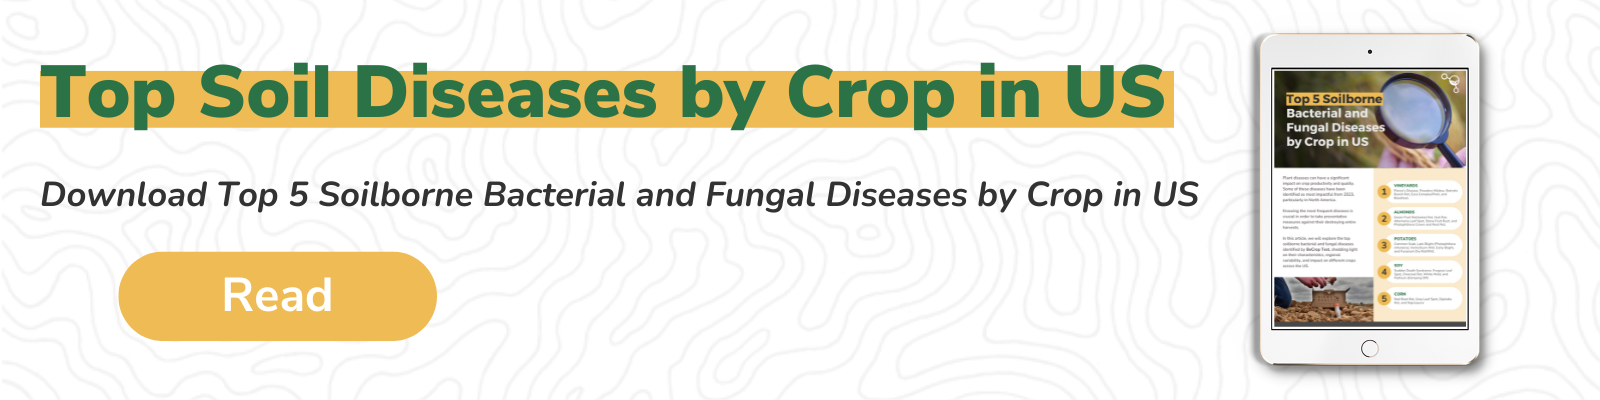 Top Soil Diseases by Crop in US